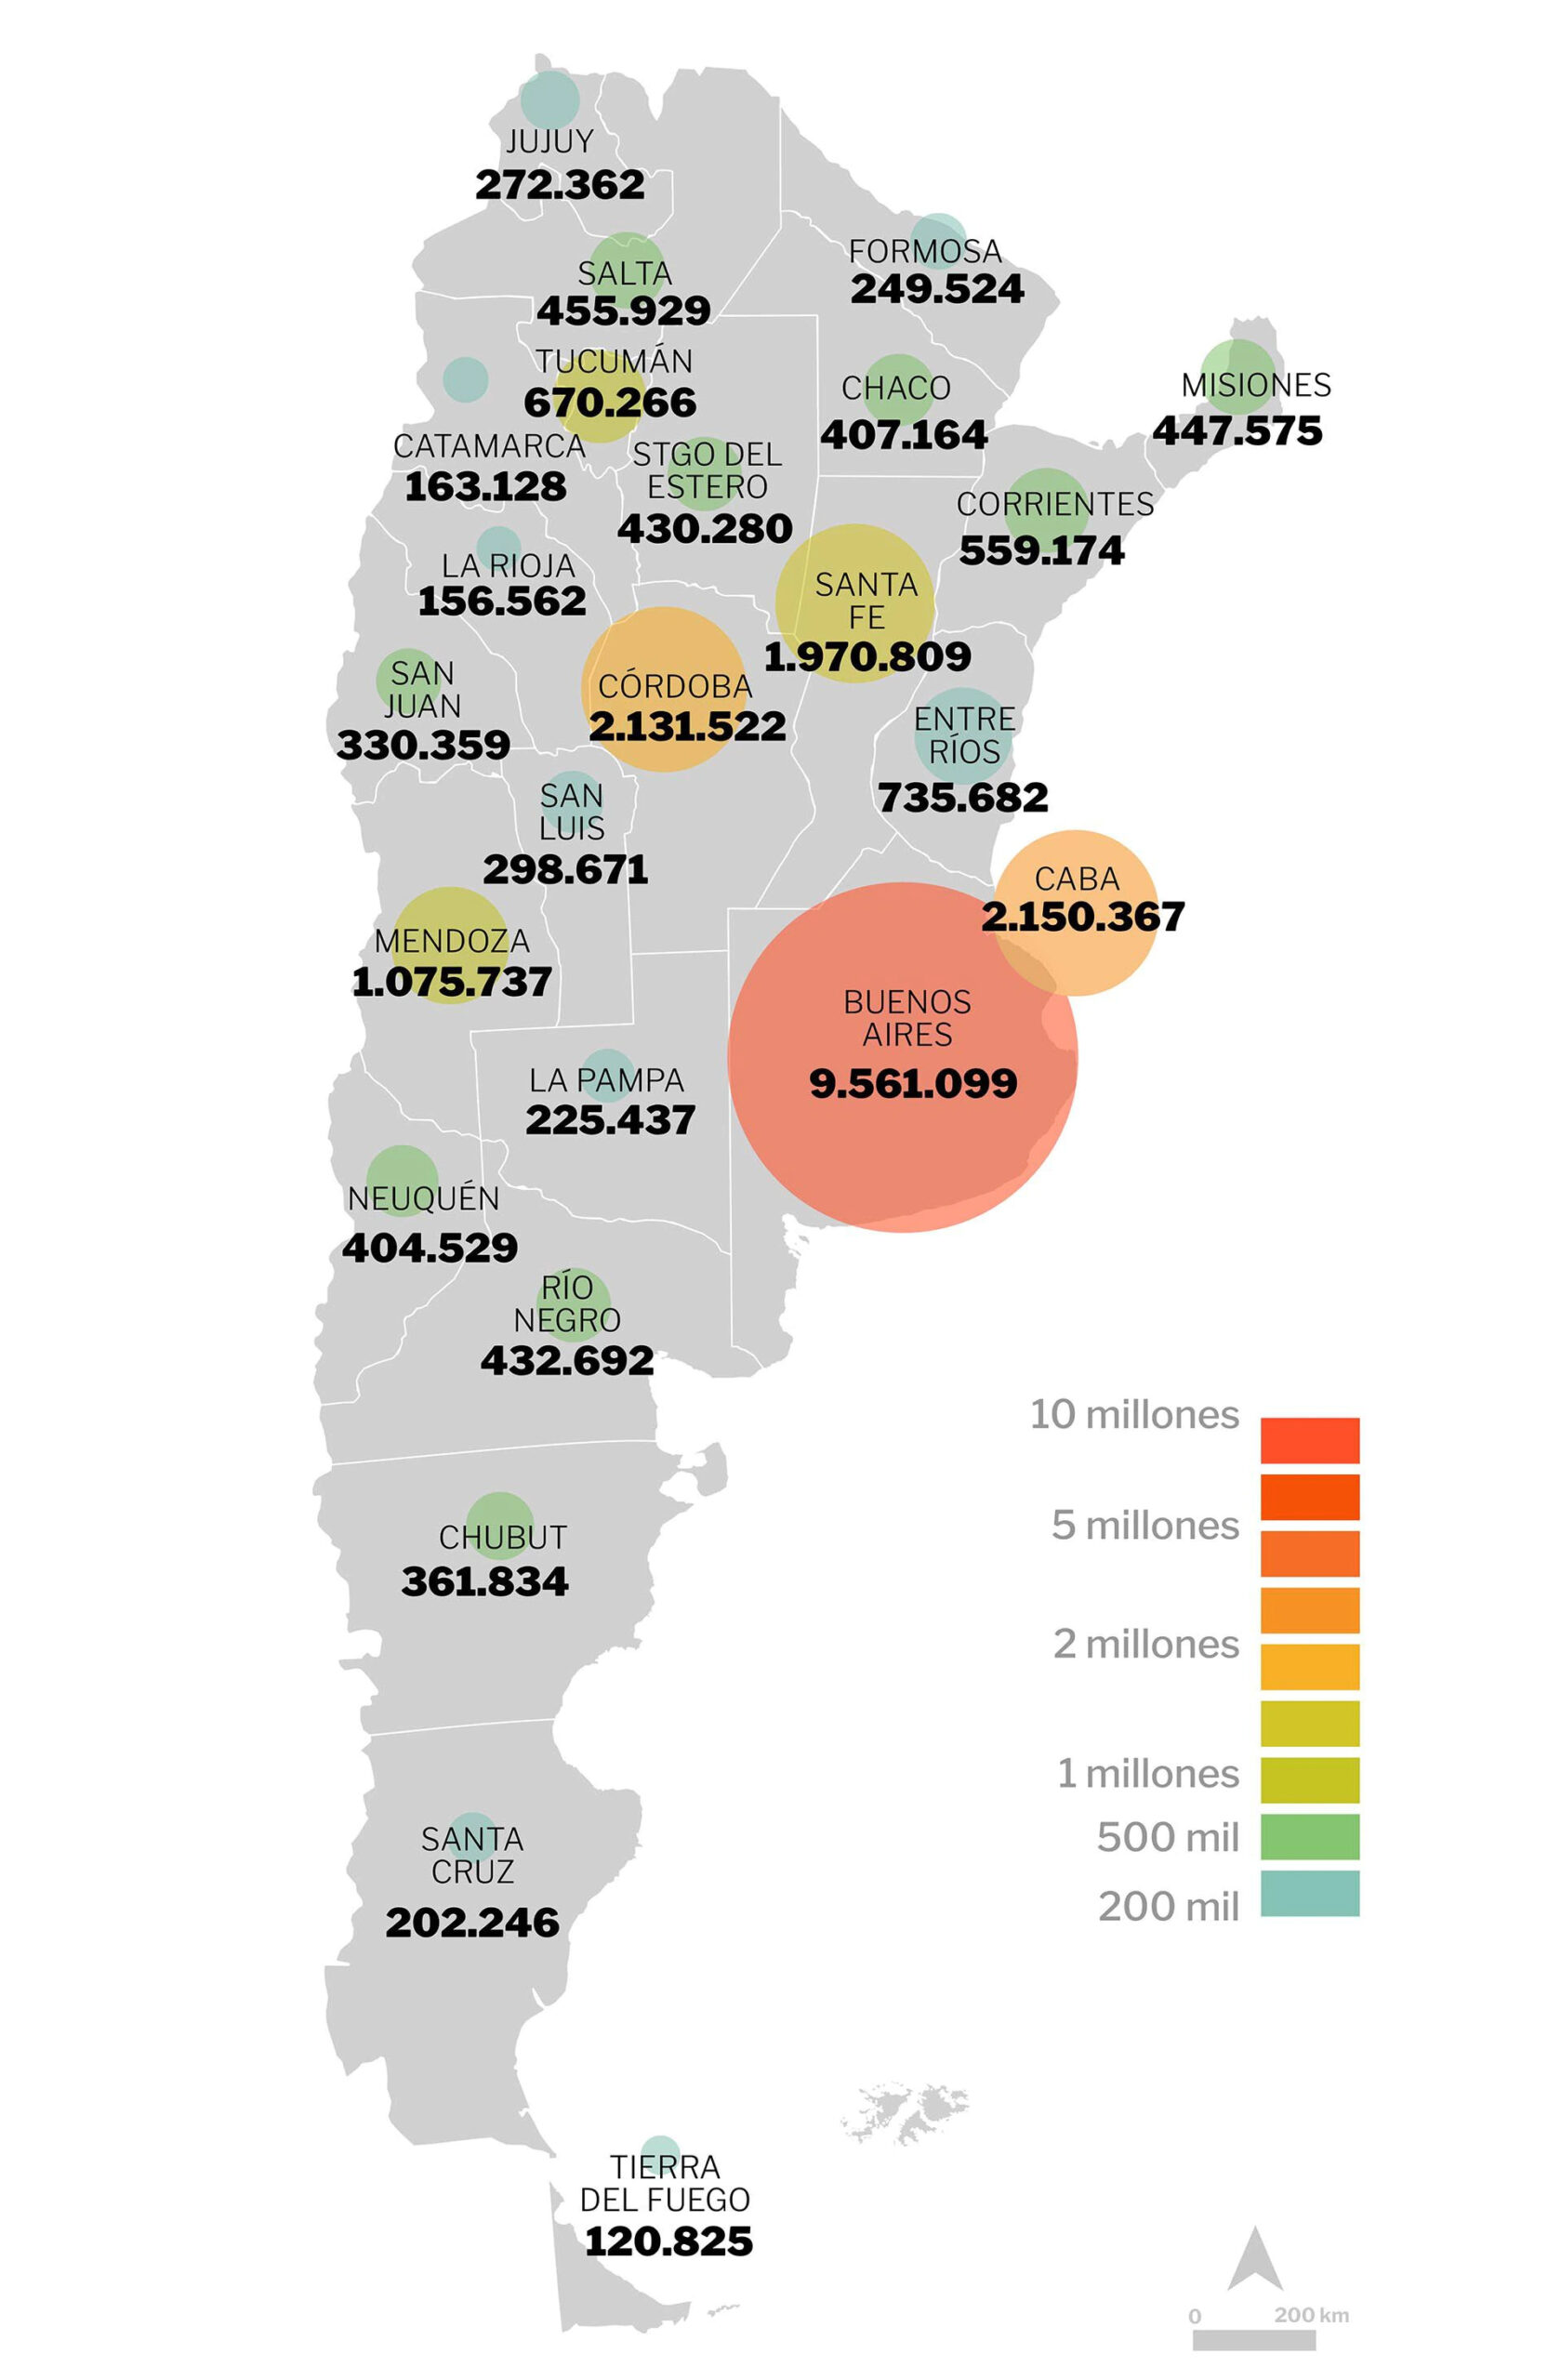 En Chubut 361.834 personas completaron el Censo Digital